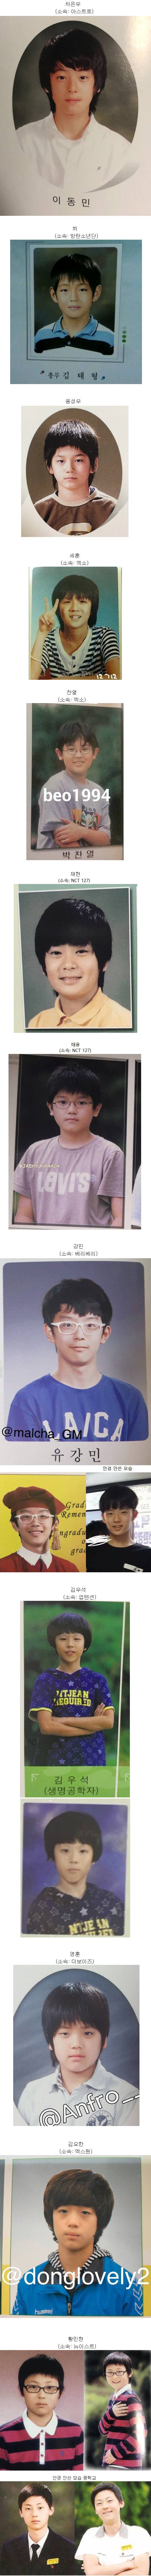 얼굴천재로 불리는 남자아이돌들의 초등학교 졸업사진.JPG | 인스티즈